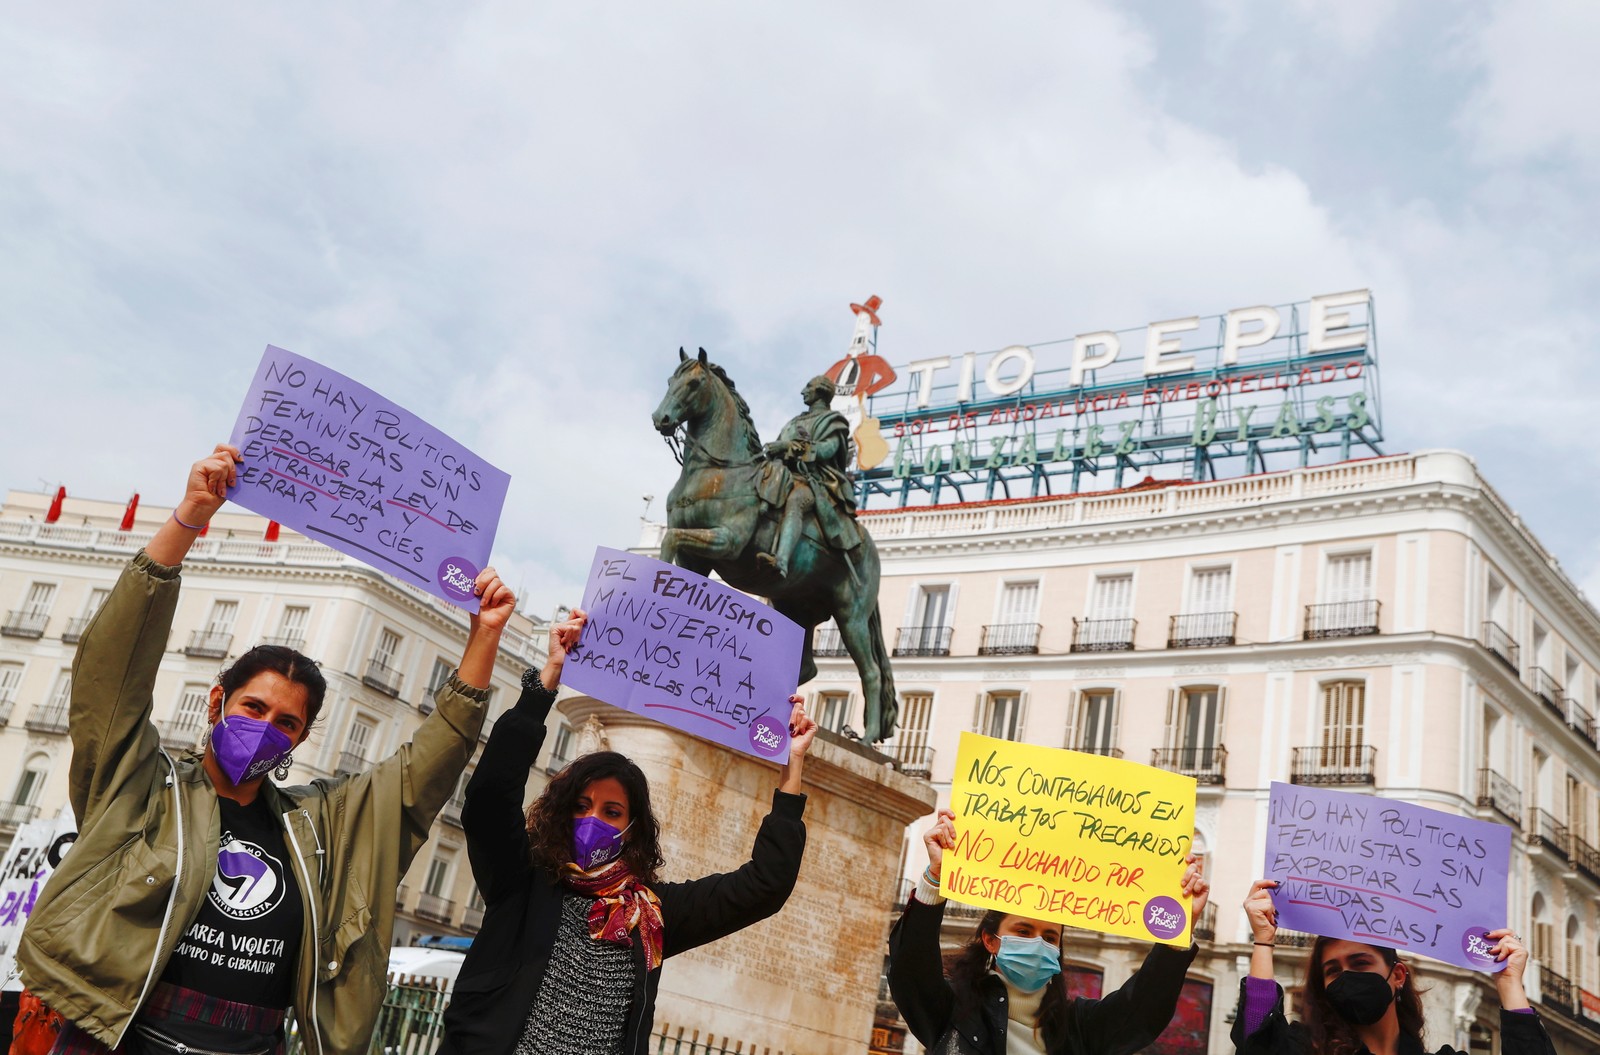 Pessoas se reúnem em uma manifestação para marcar o Dia Internacional da Mulher, apesar de terem sido proibidas pelas autoridades locais devido às restrições devido à pandemia, na praça Porta do Sol, onde fica o Marco Zero de Madrid, EspanhaREUTERS